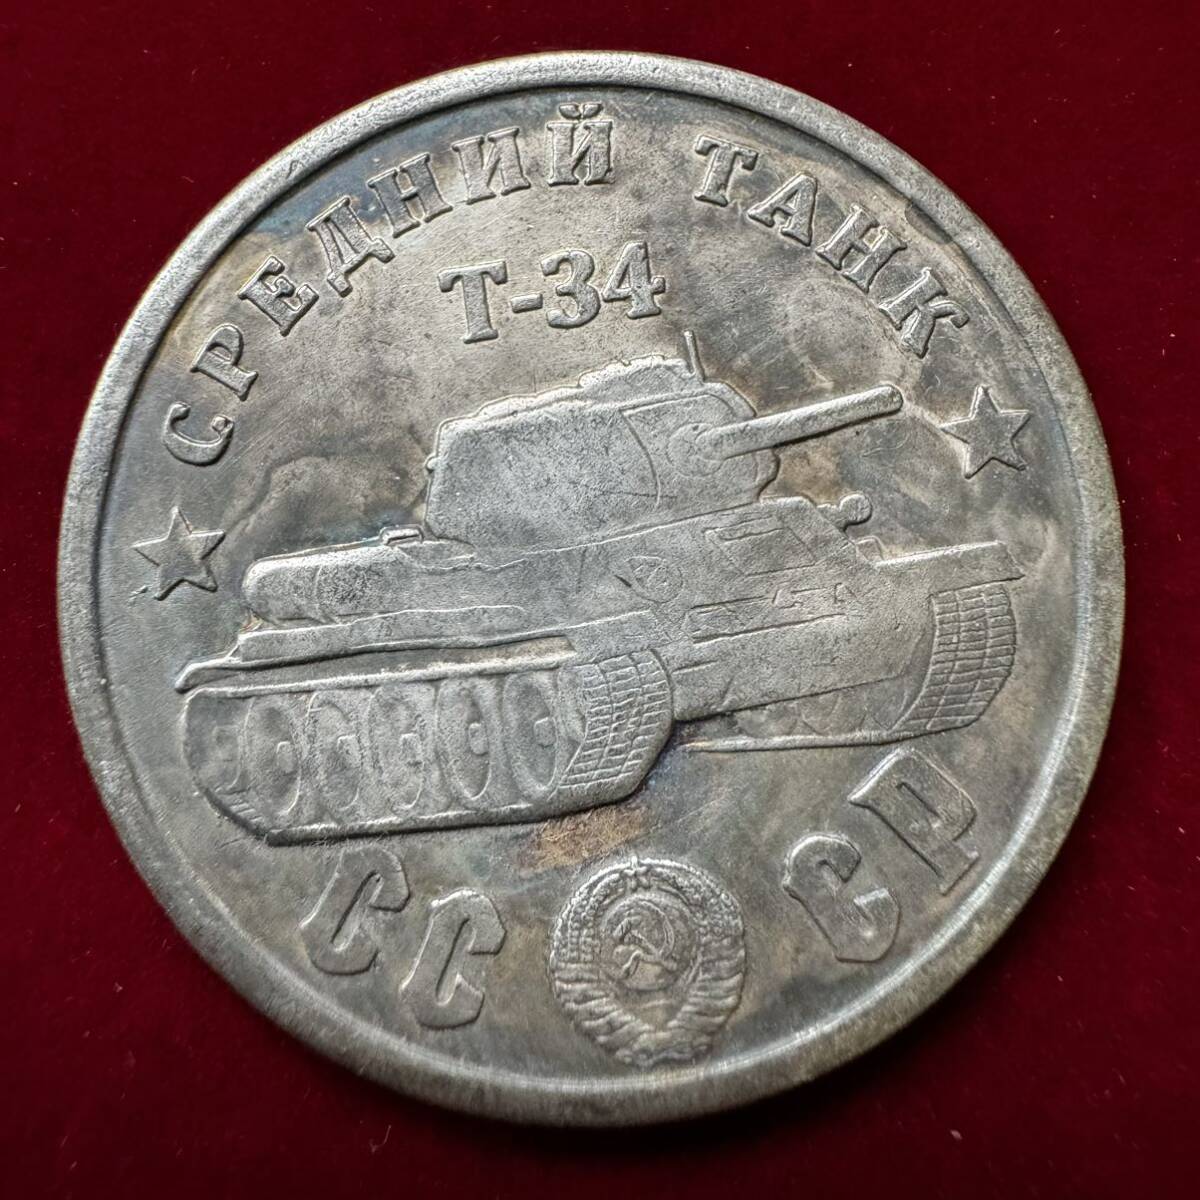 ロシア 硬貨 古銭 ソビエト連邦 戦車 記念幣 T-34 クレムリン宮殿 コレクション コイン の画像1